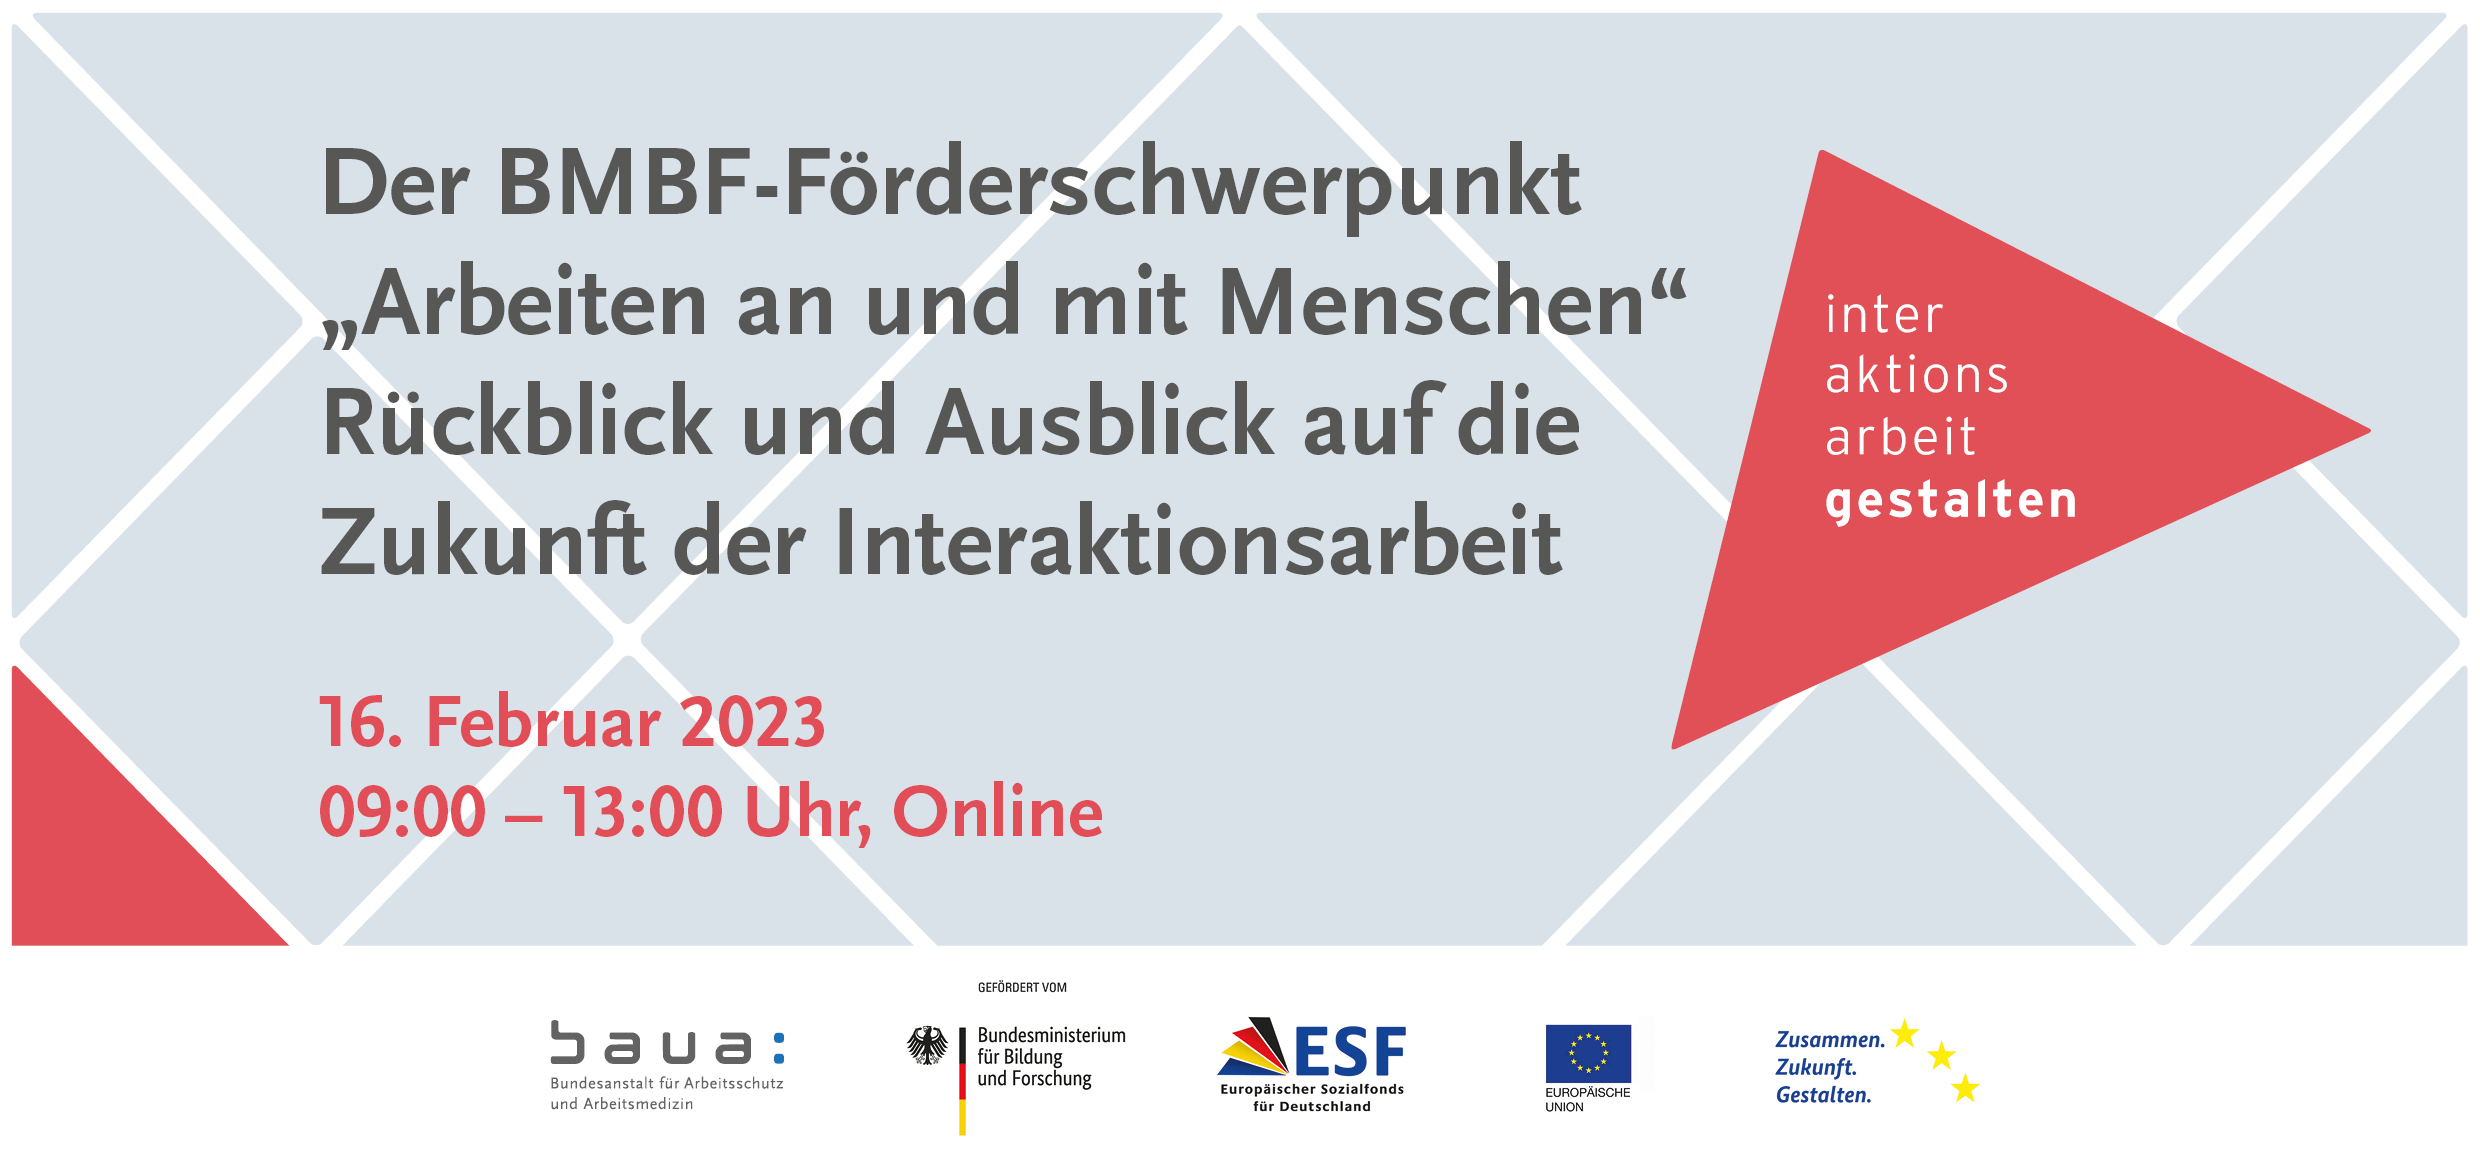 Der BMBF-Förderschwerpunkt "Arbeiten an und mit Menschen" – Rückblick und Ausblick auf die Zukunft der Interaktionsarbeit